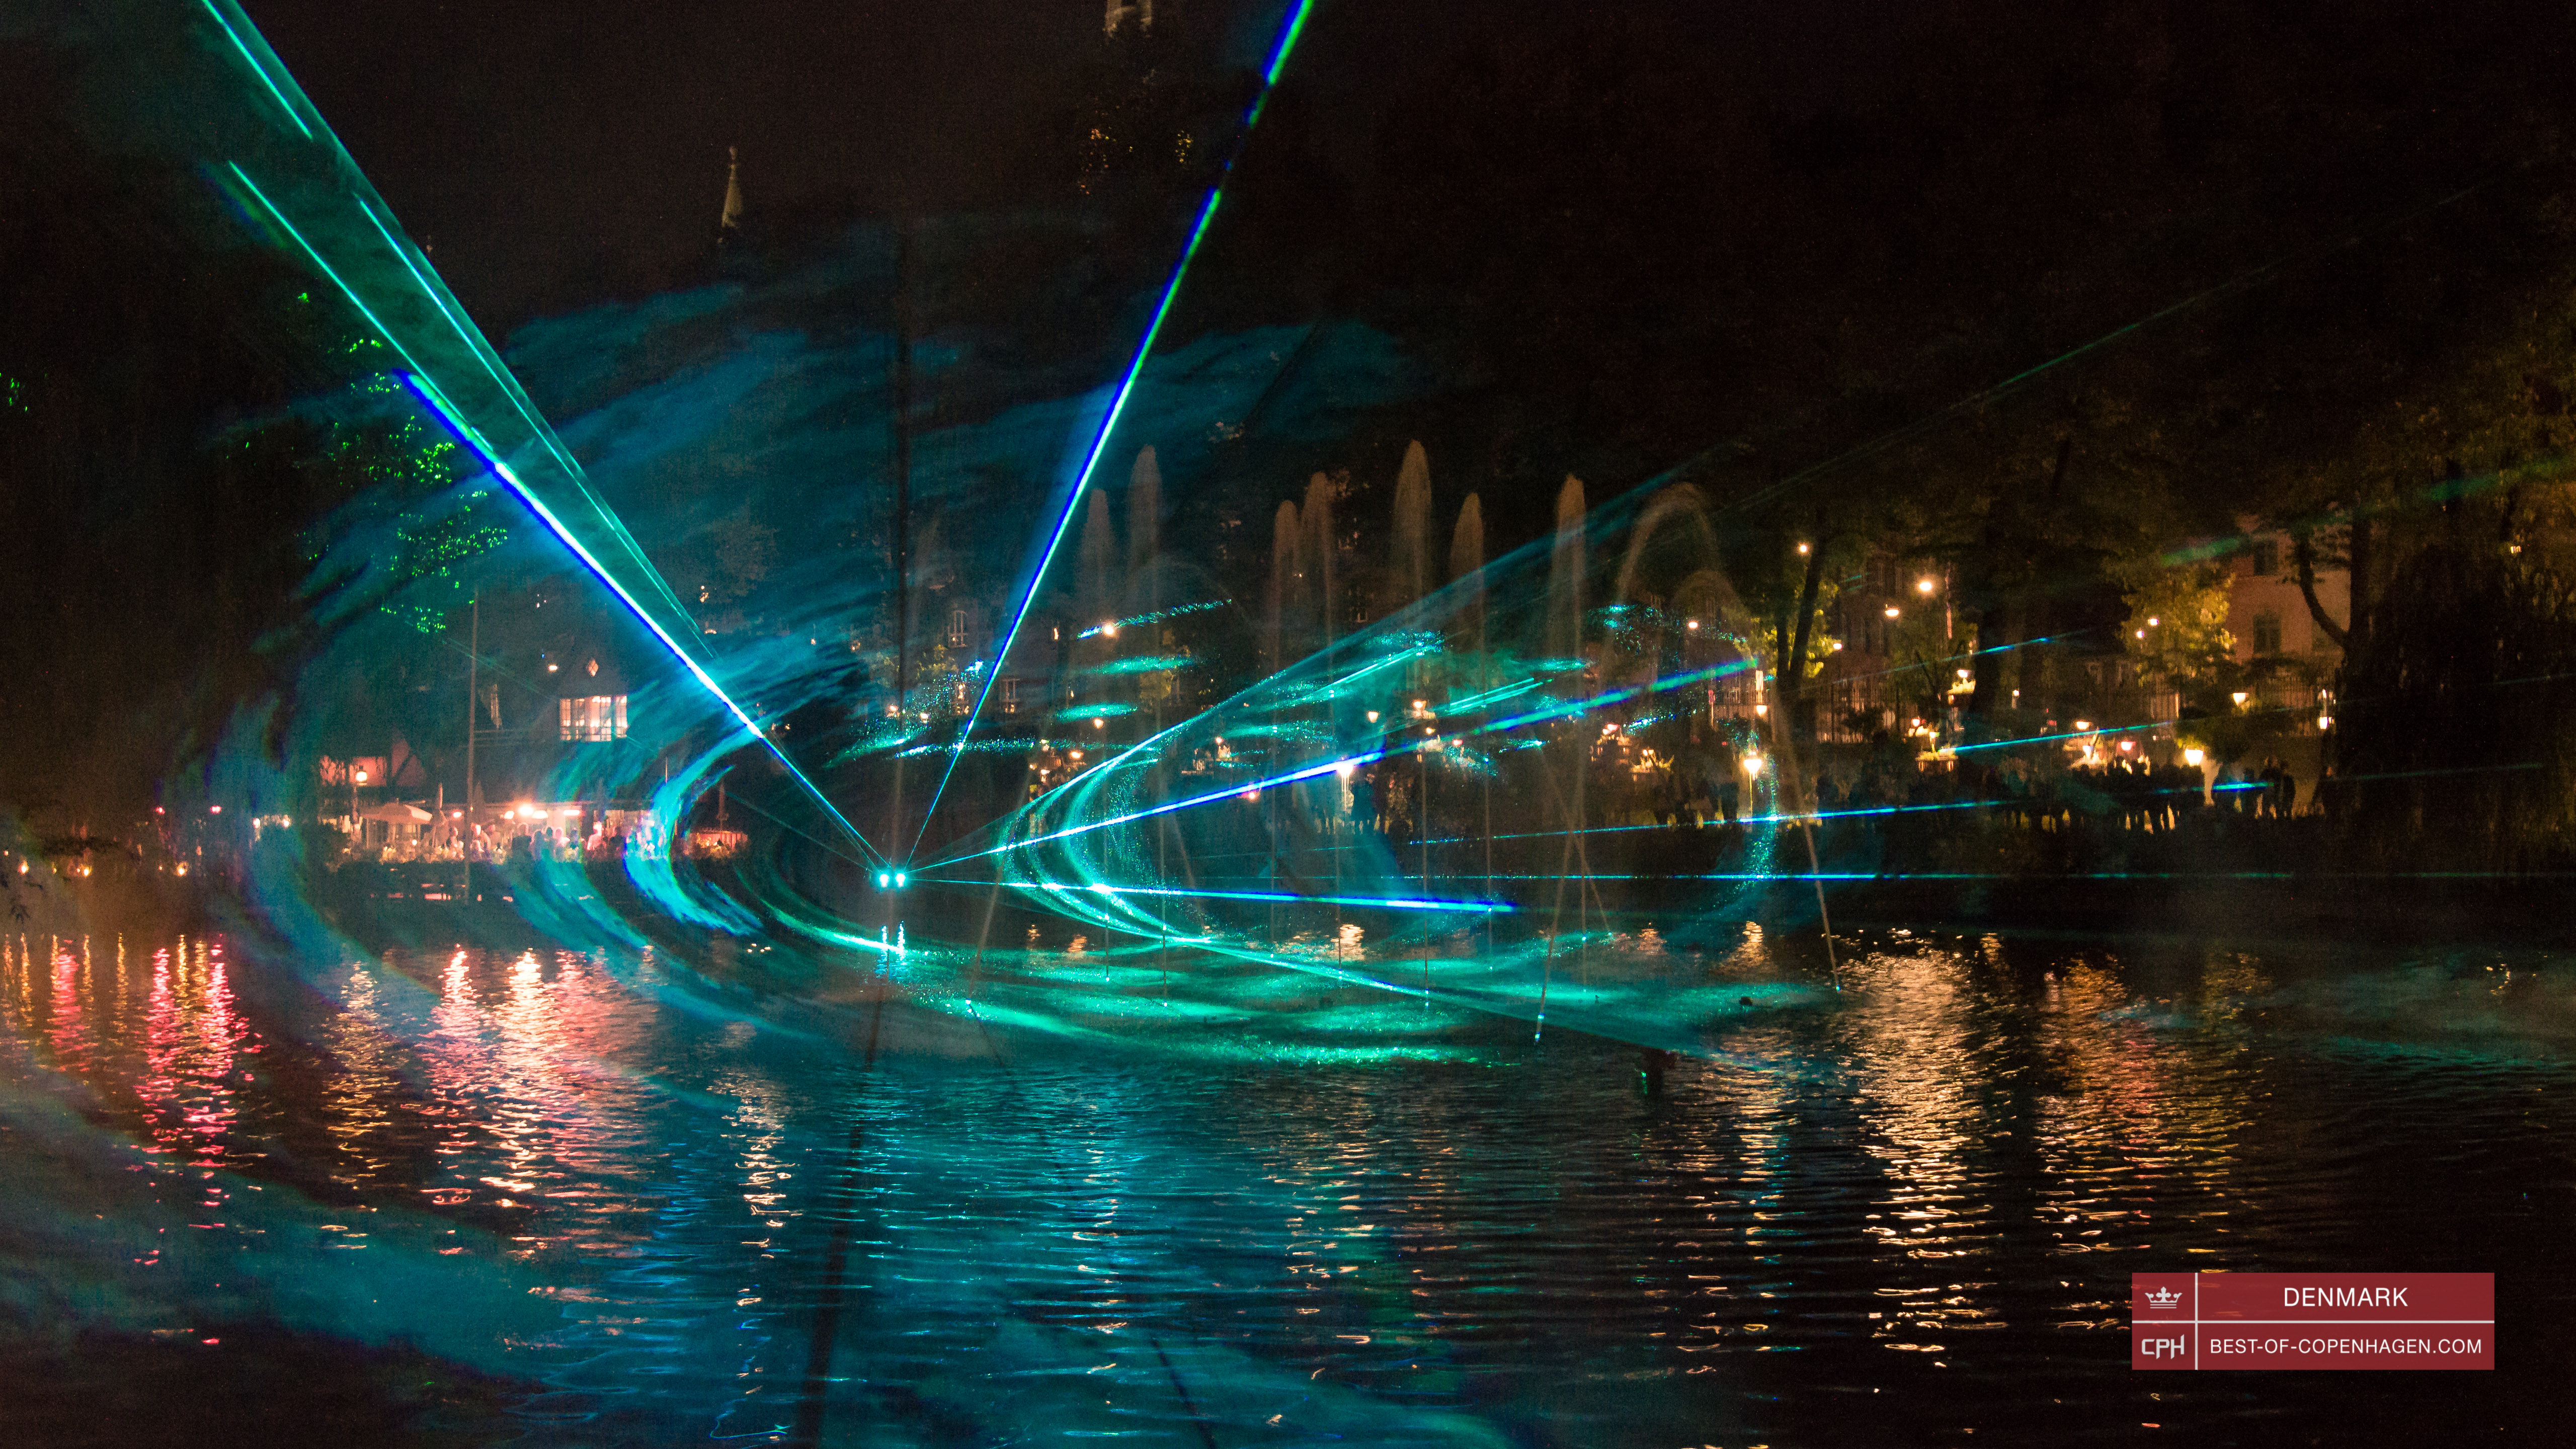 Show de Láseres en el lago del parque Tivoli, Copenhague, Dinamarca